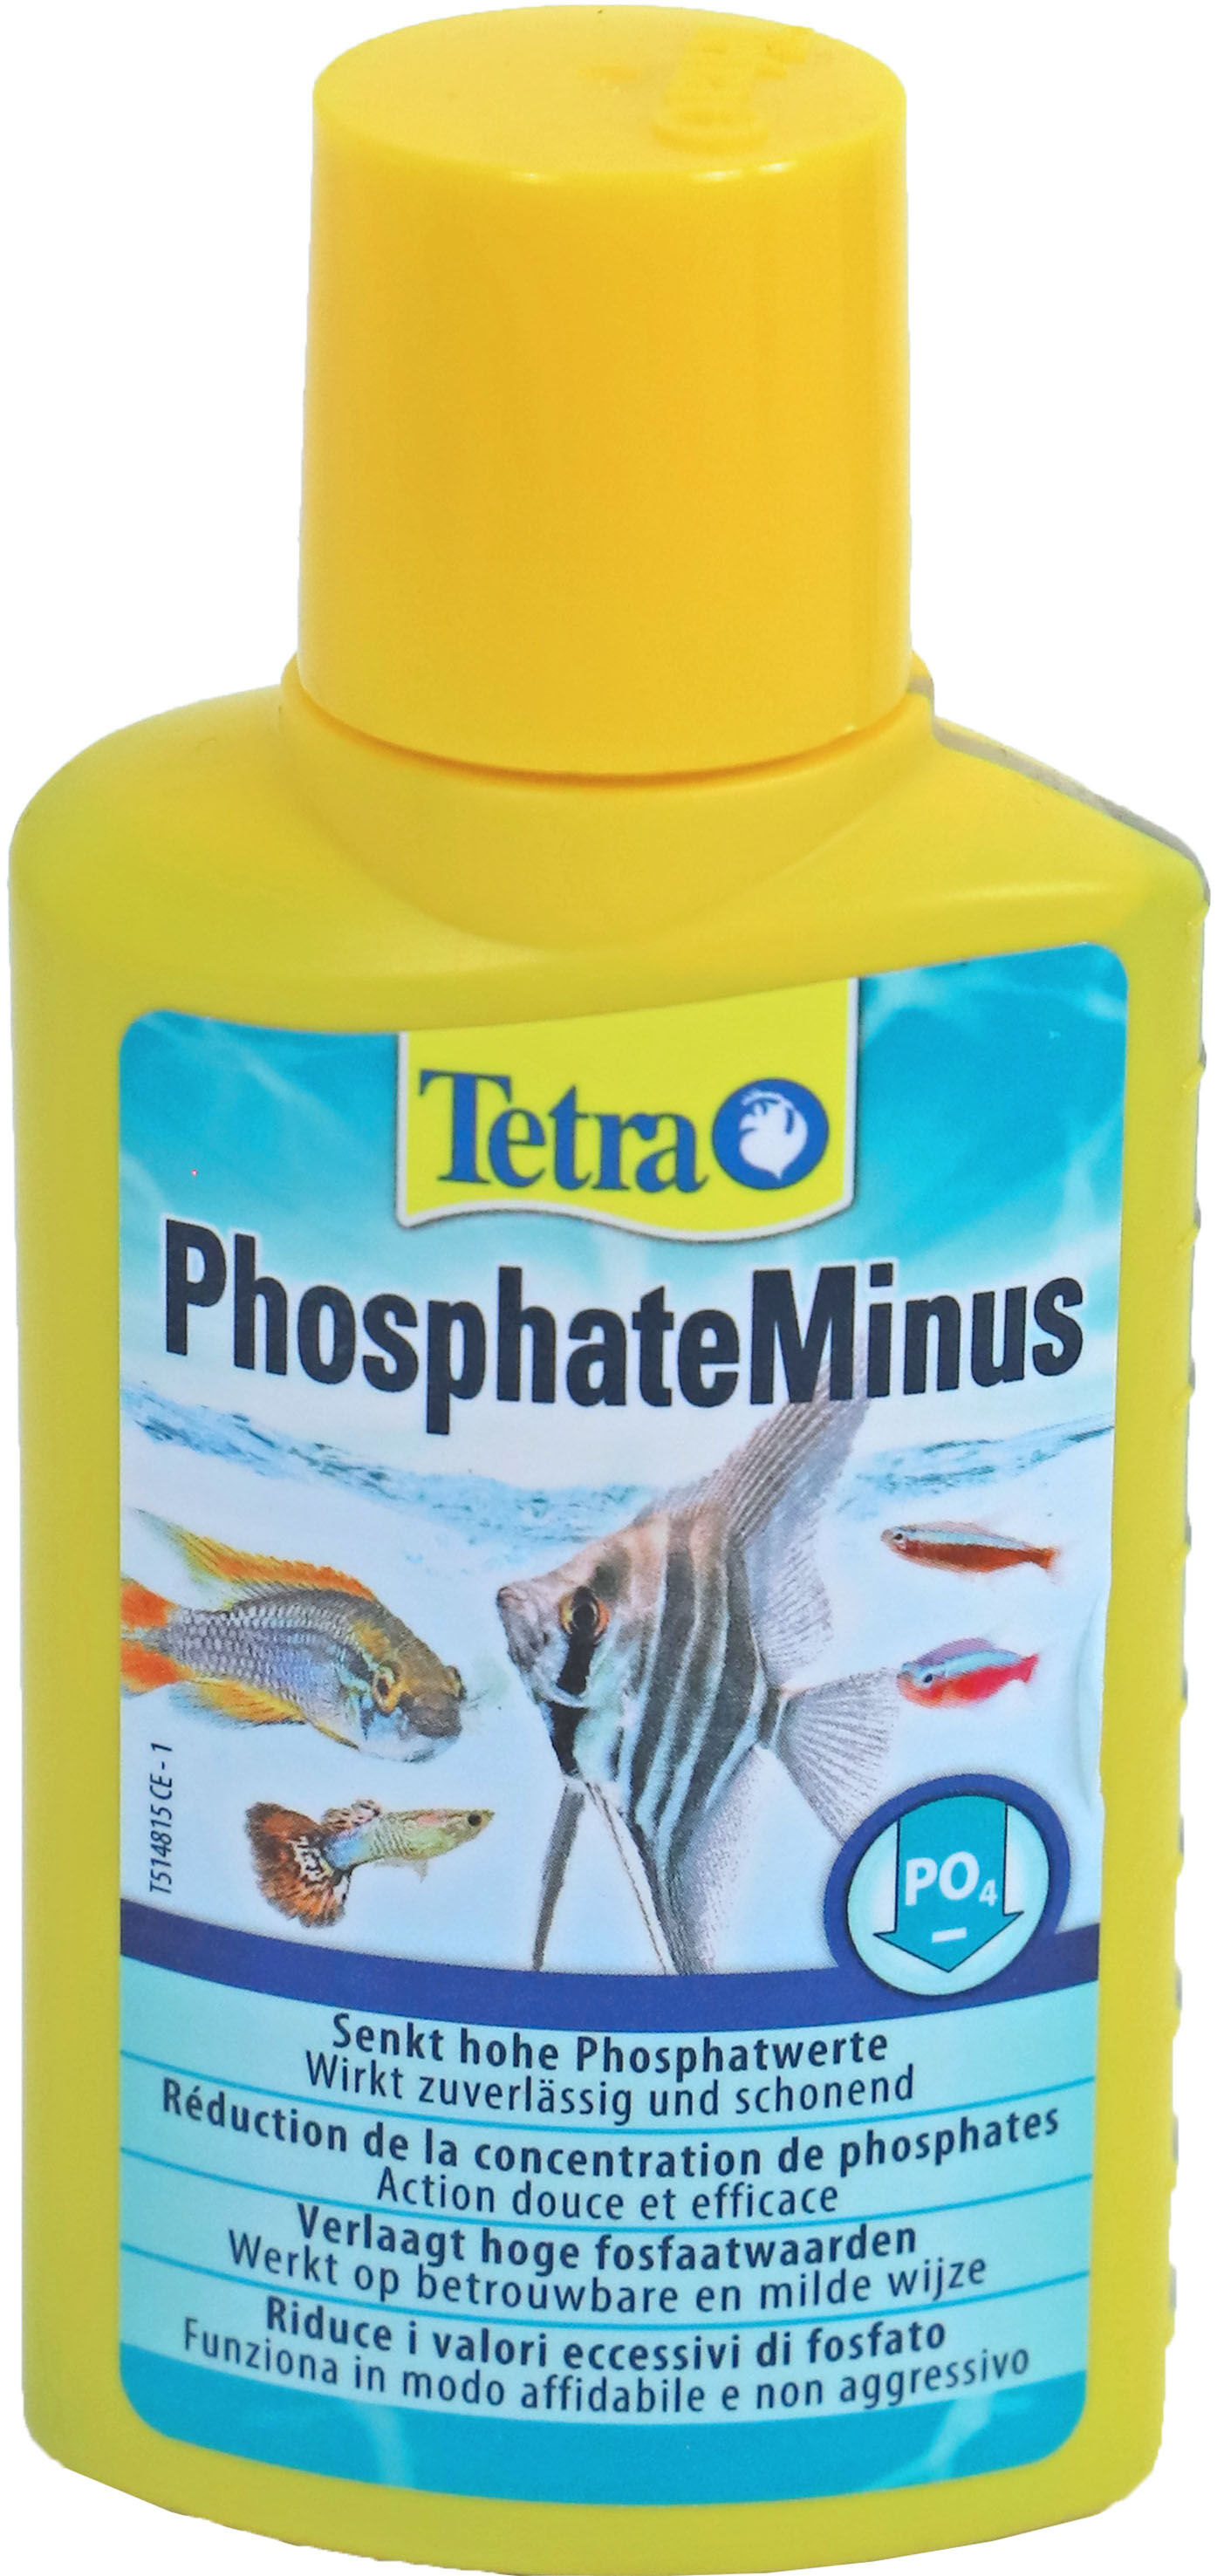 Phosfate Minus 100 Ml